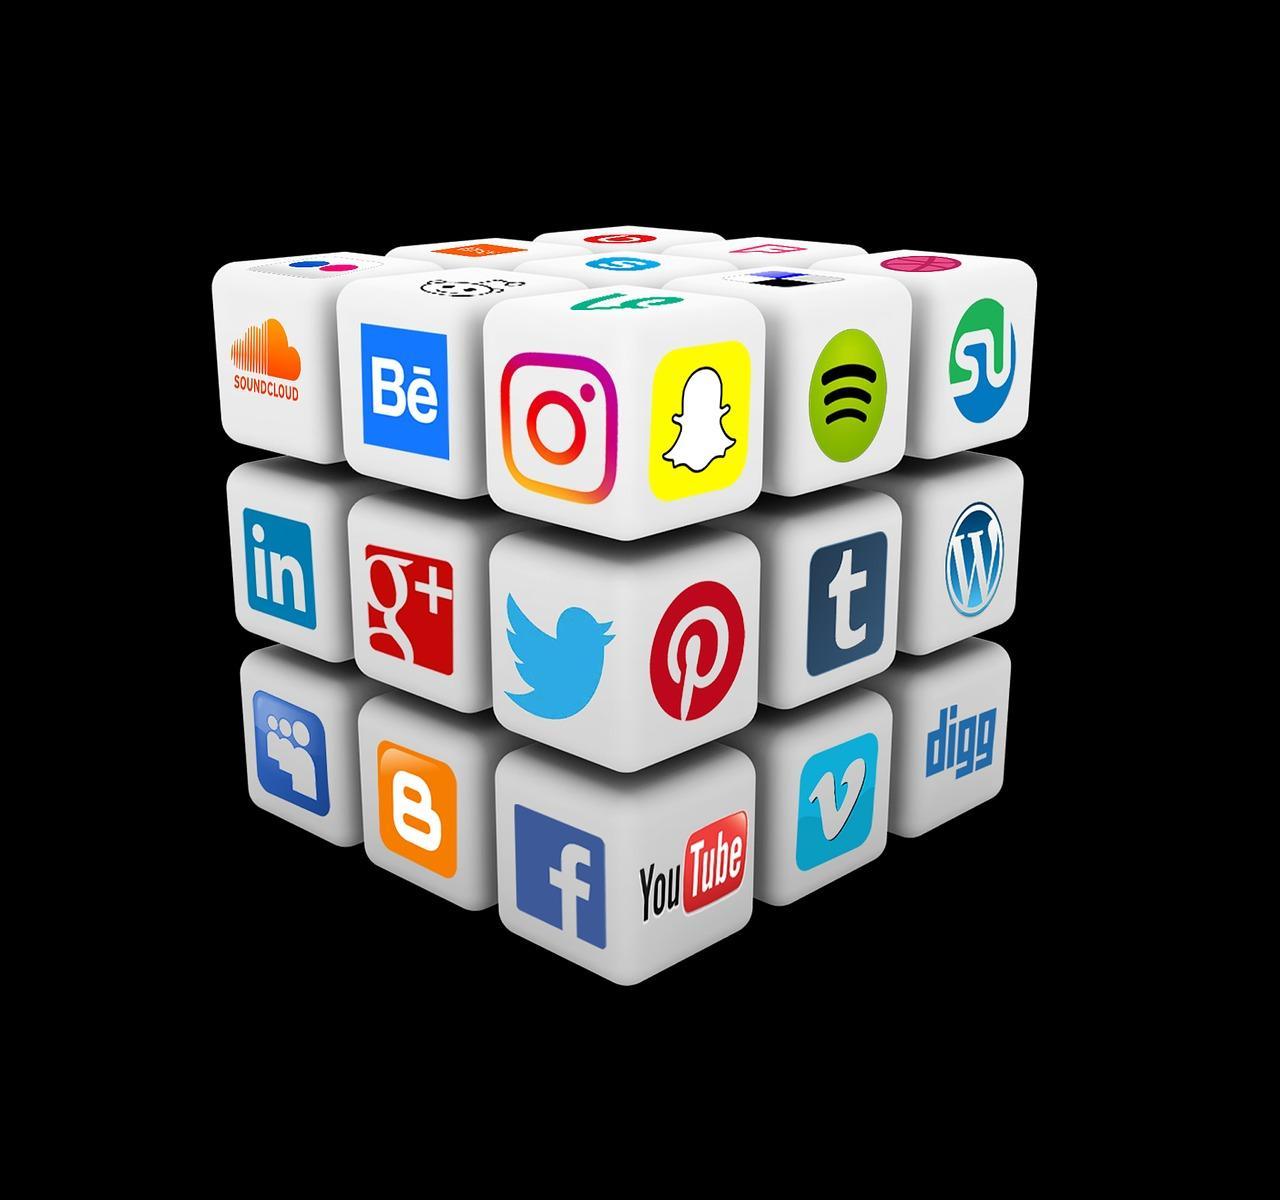 Social media for business